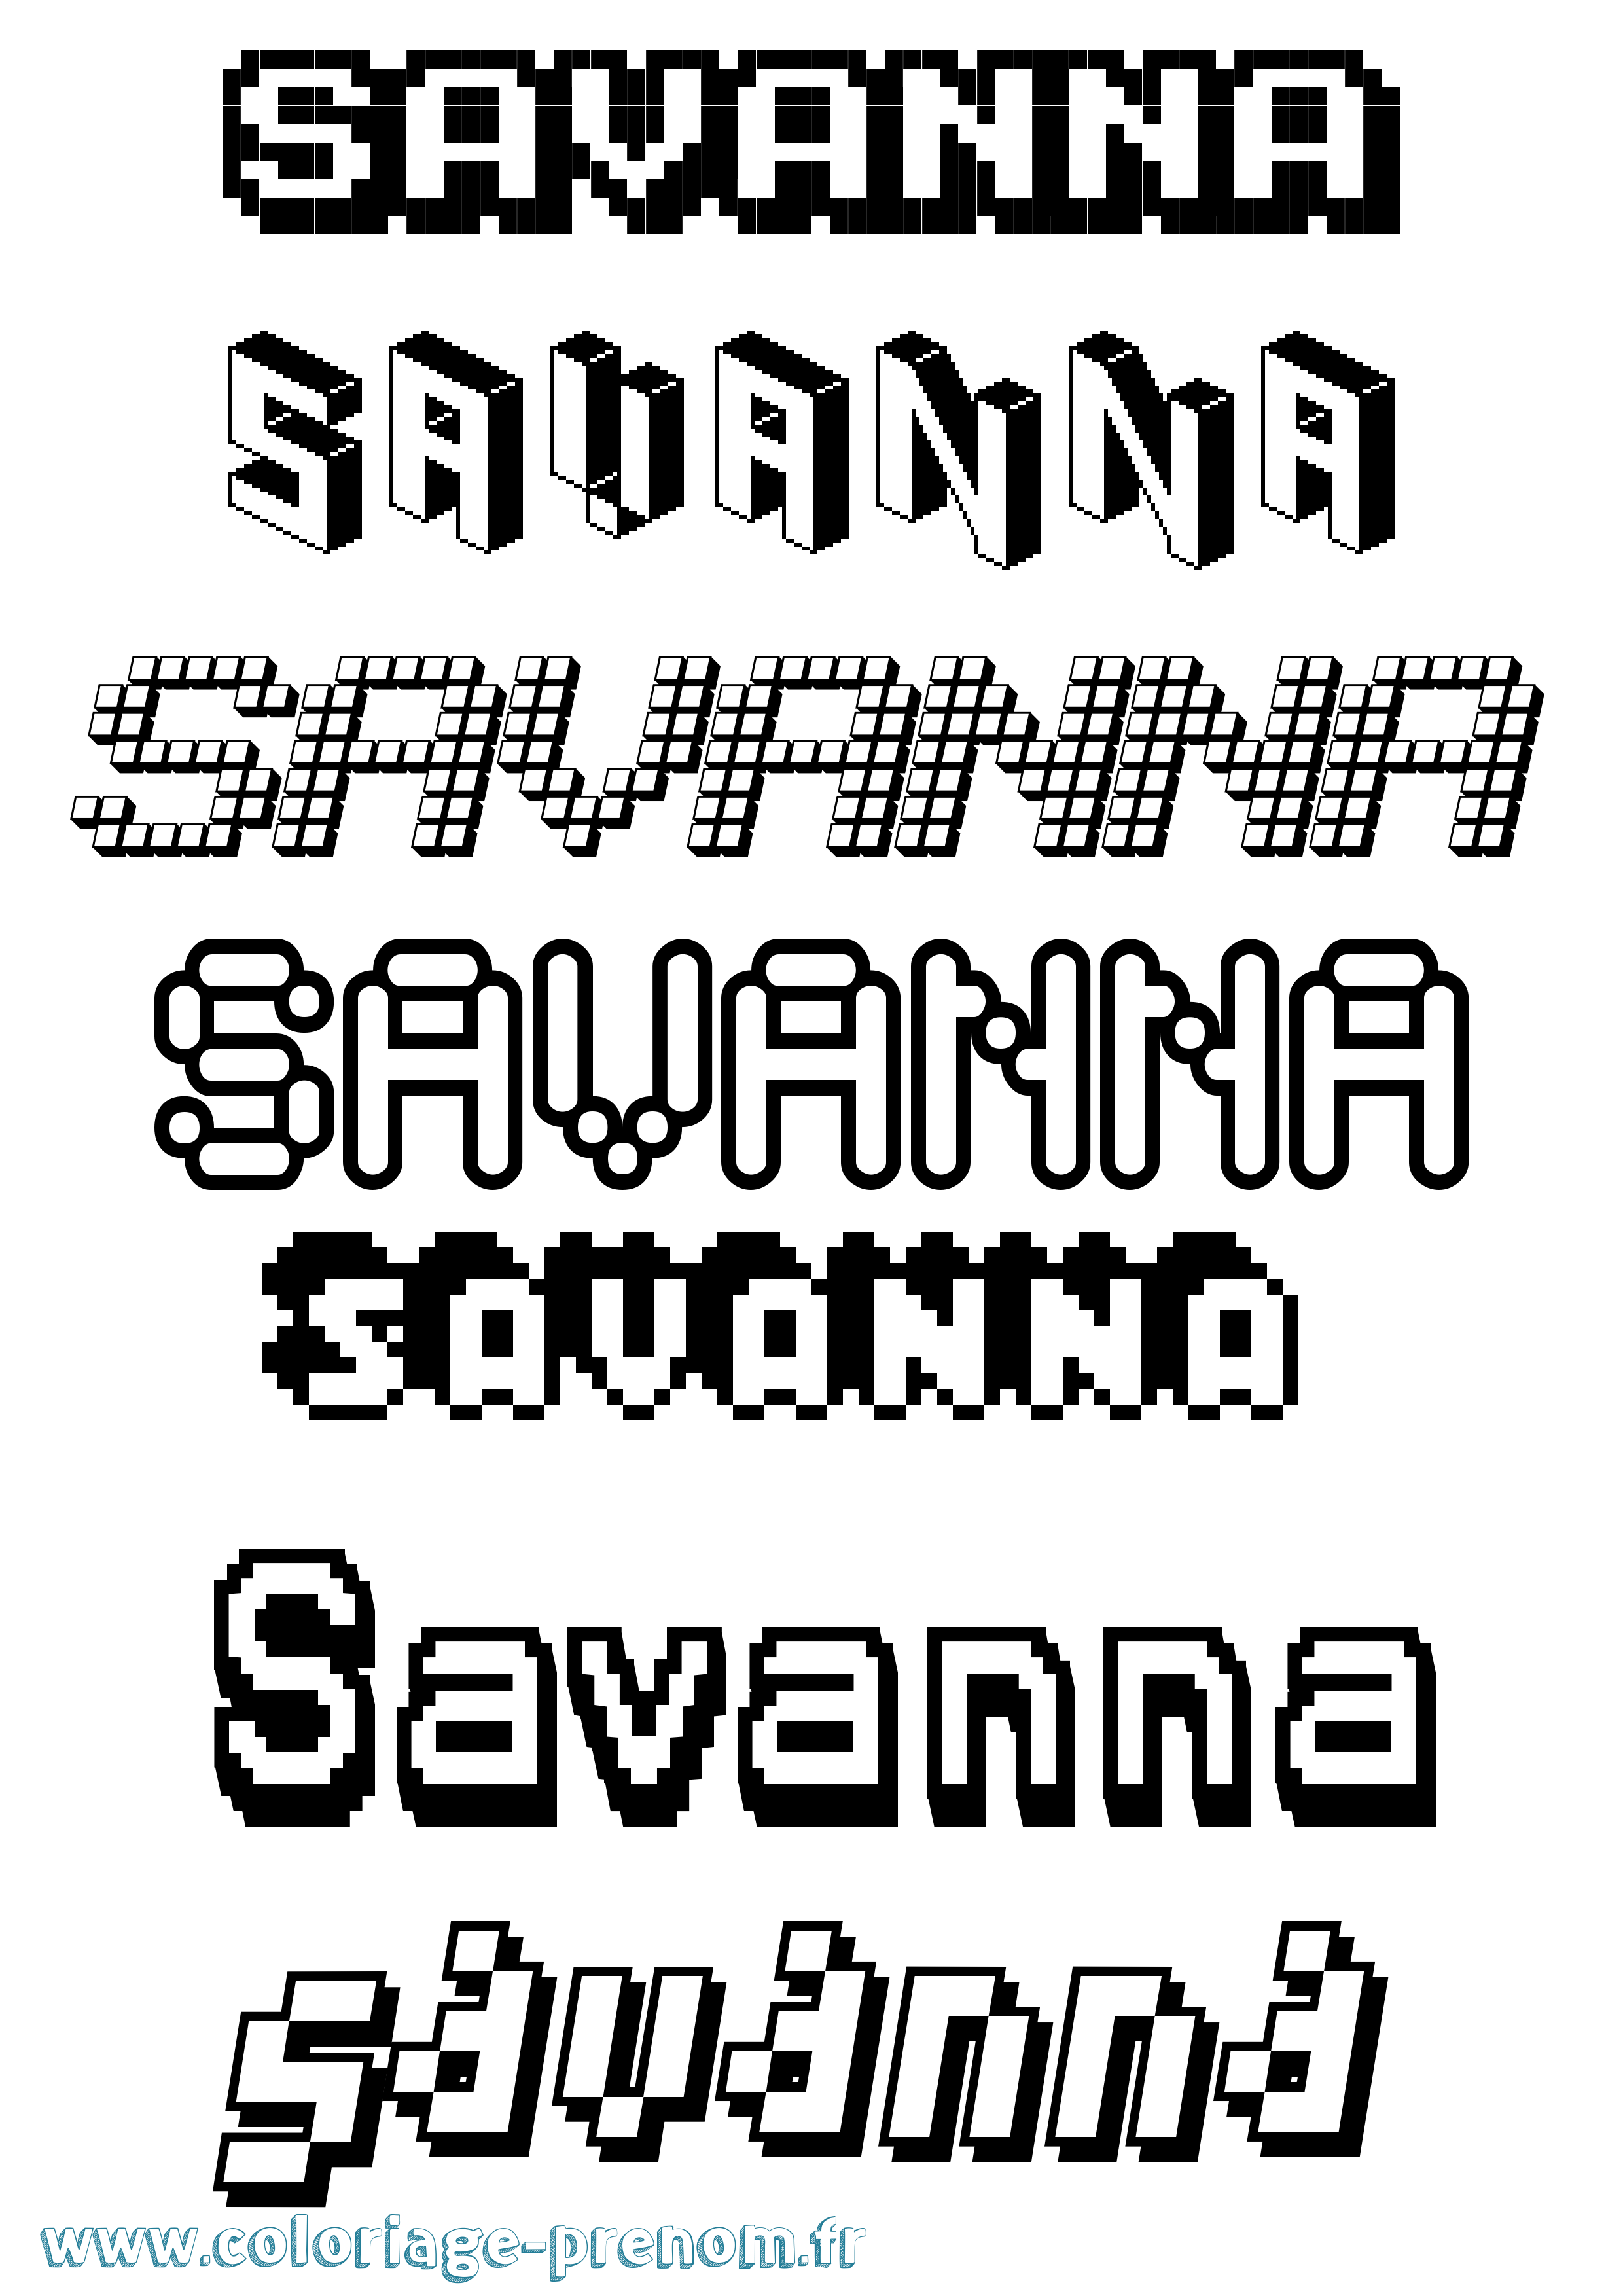 Coloriage prénom Savanna Pixel